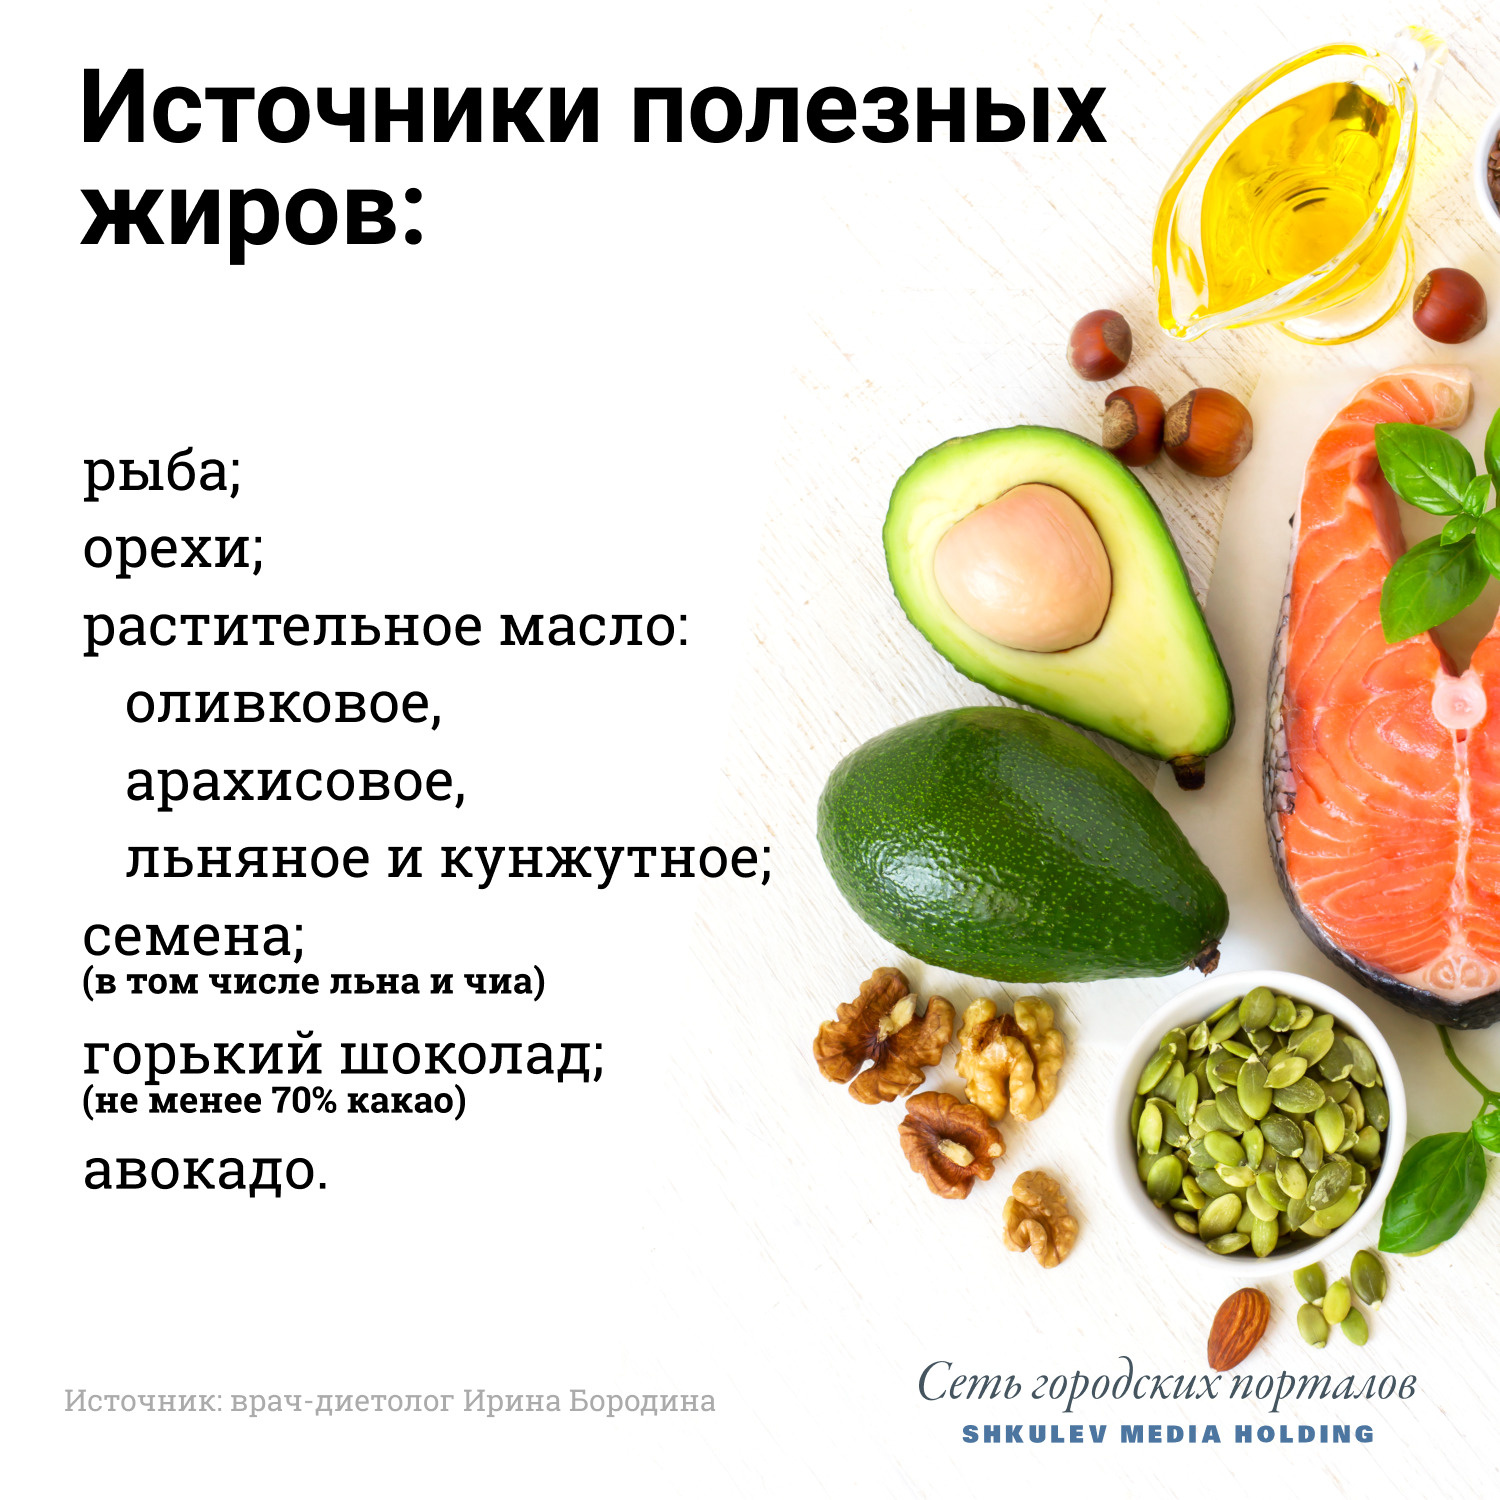 Основные группы пищевых продуктов и их значение в питании